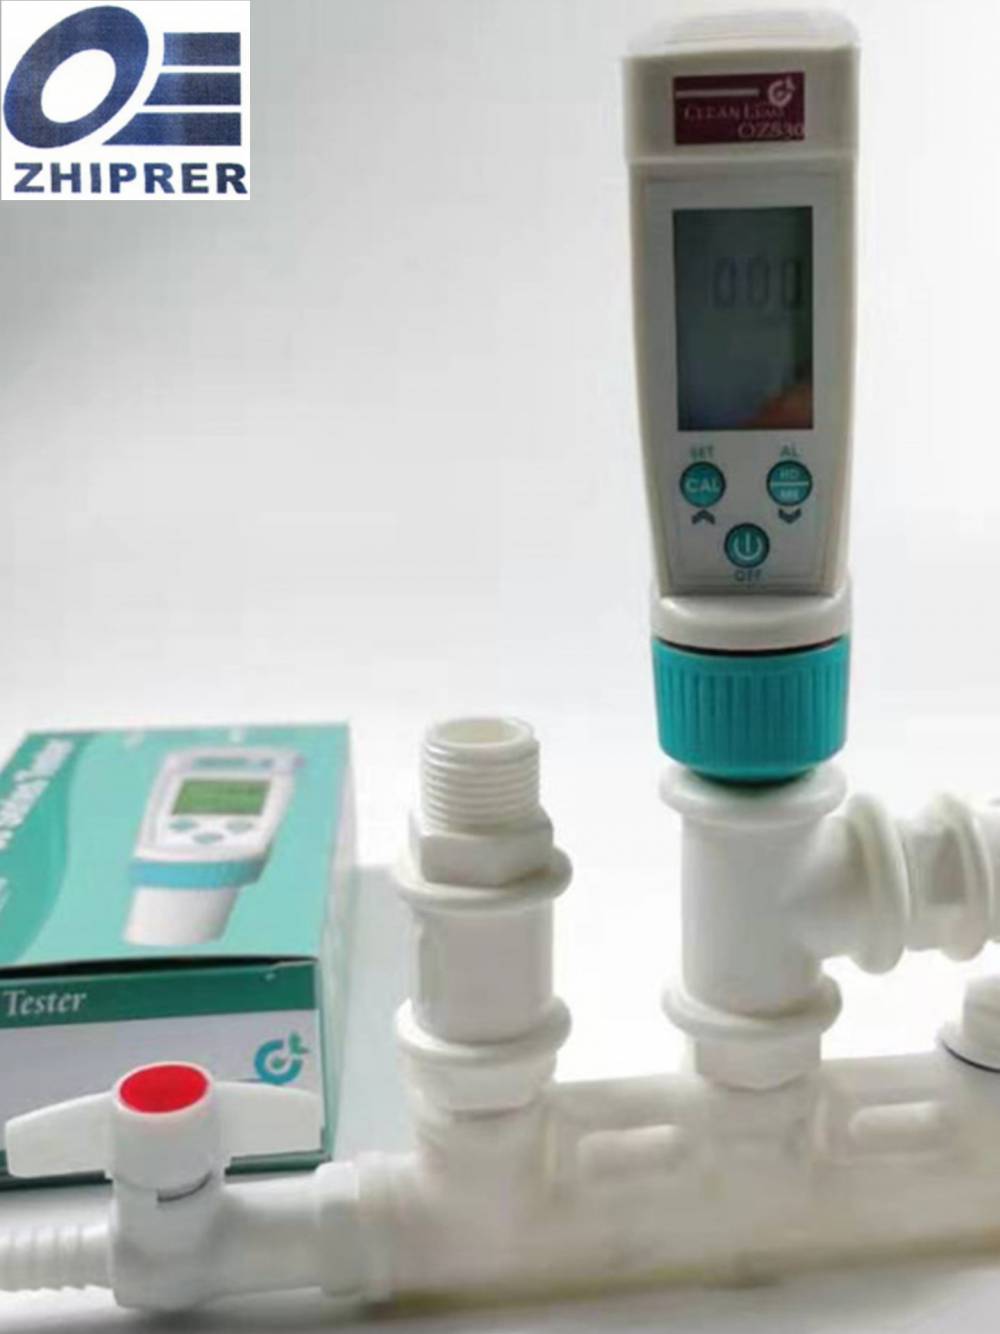 水中臭氧检测仪:便携式OZS30溶解臭氧测试笔